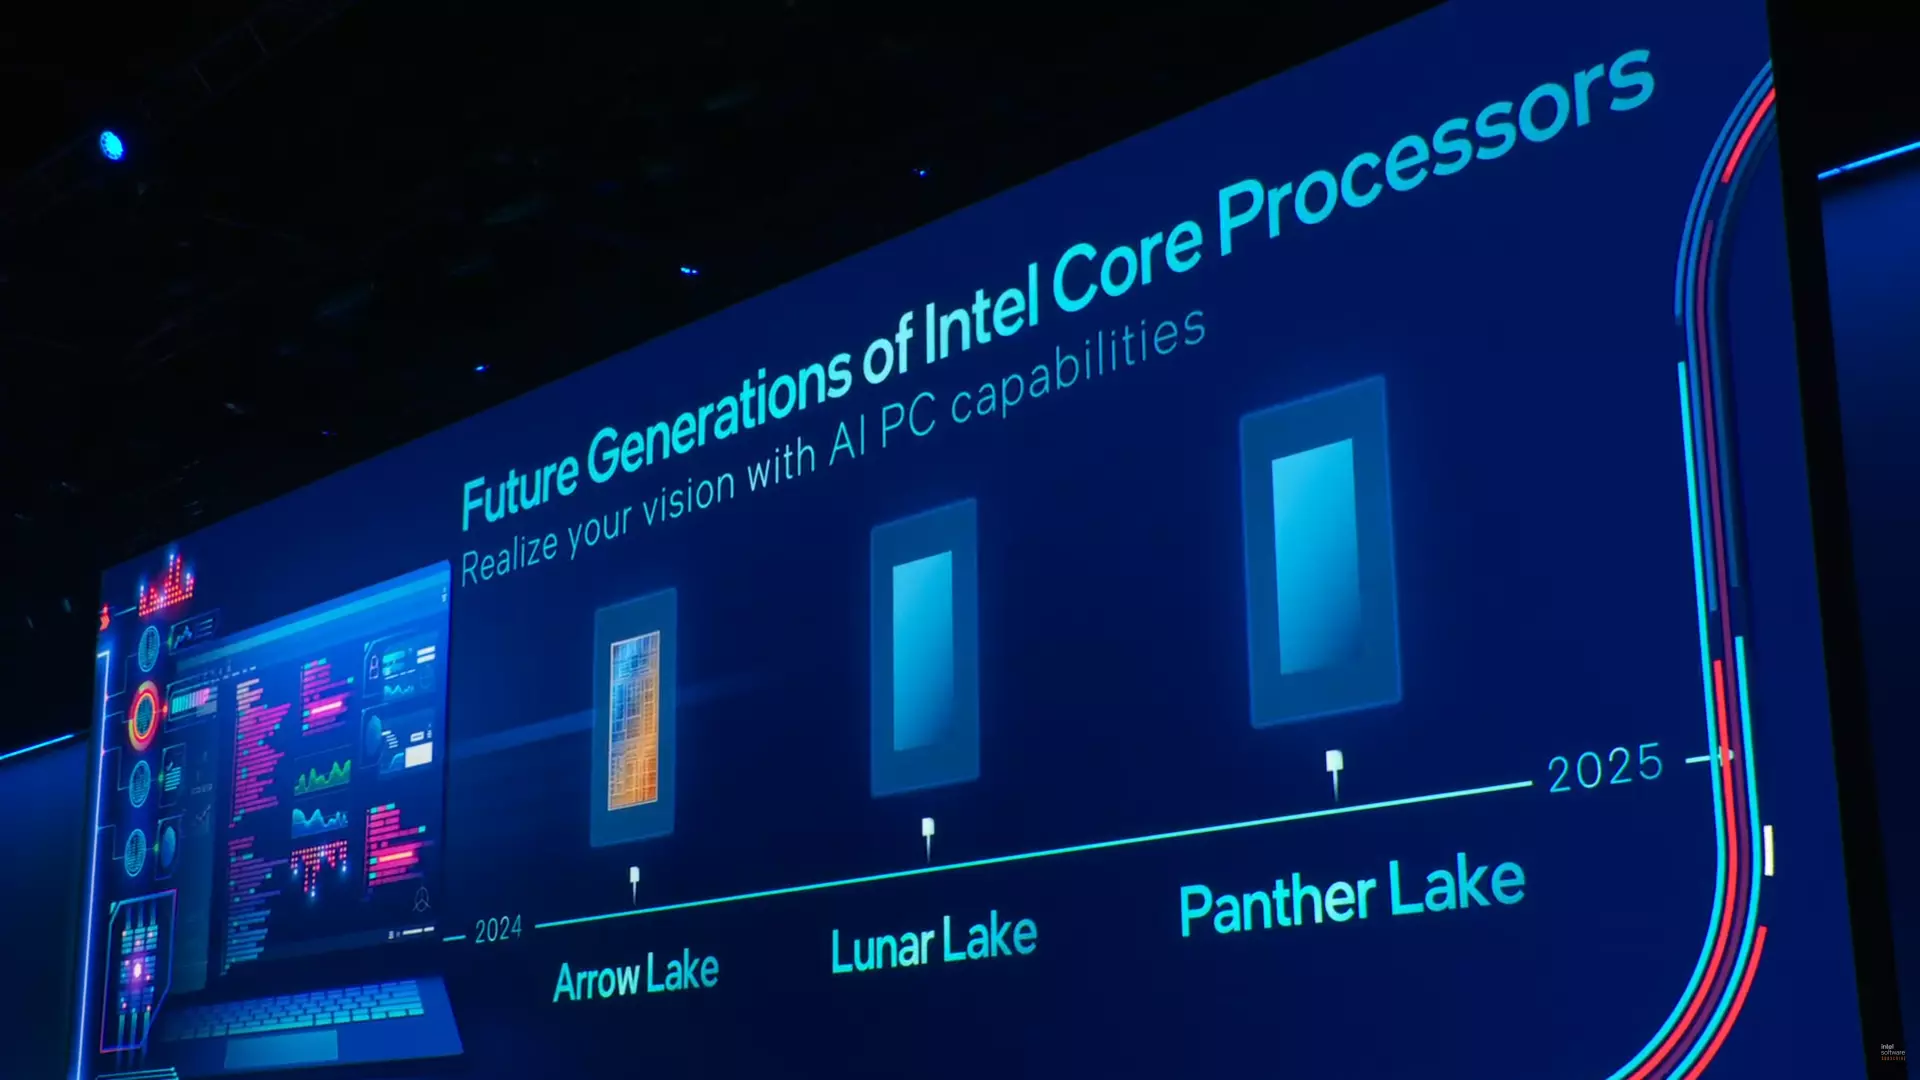 Intel-Arrow-Lake-Lunar-Lake-Panther-Lake-CPU